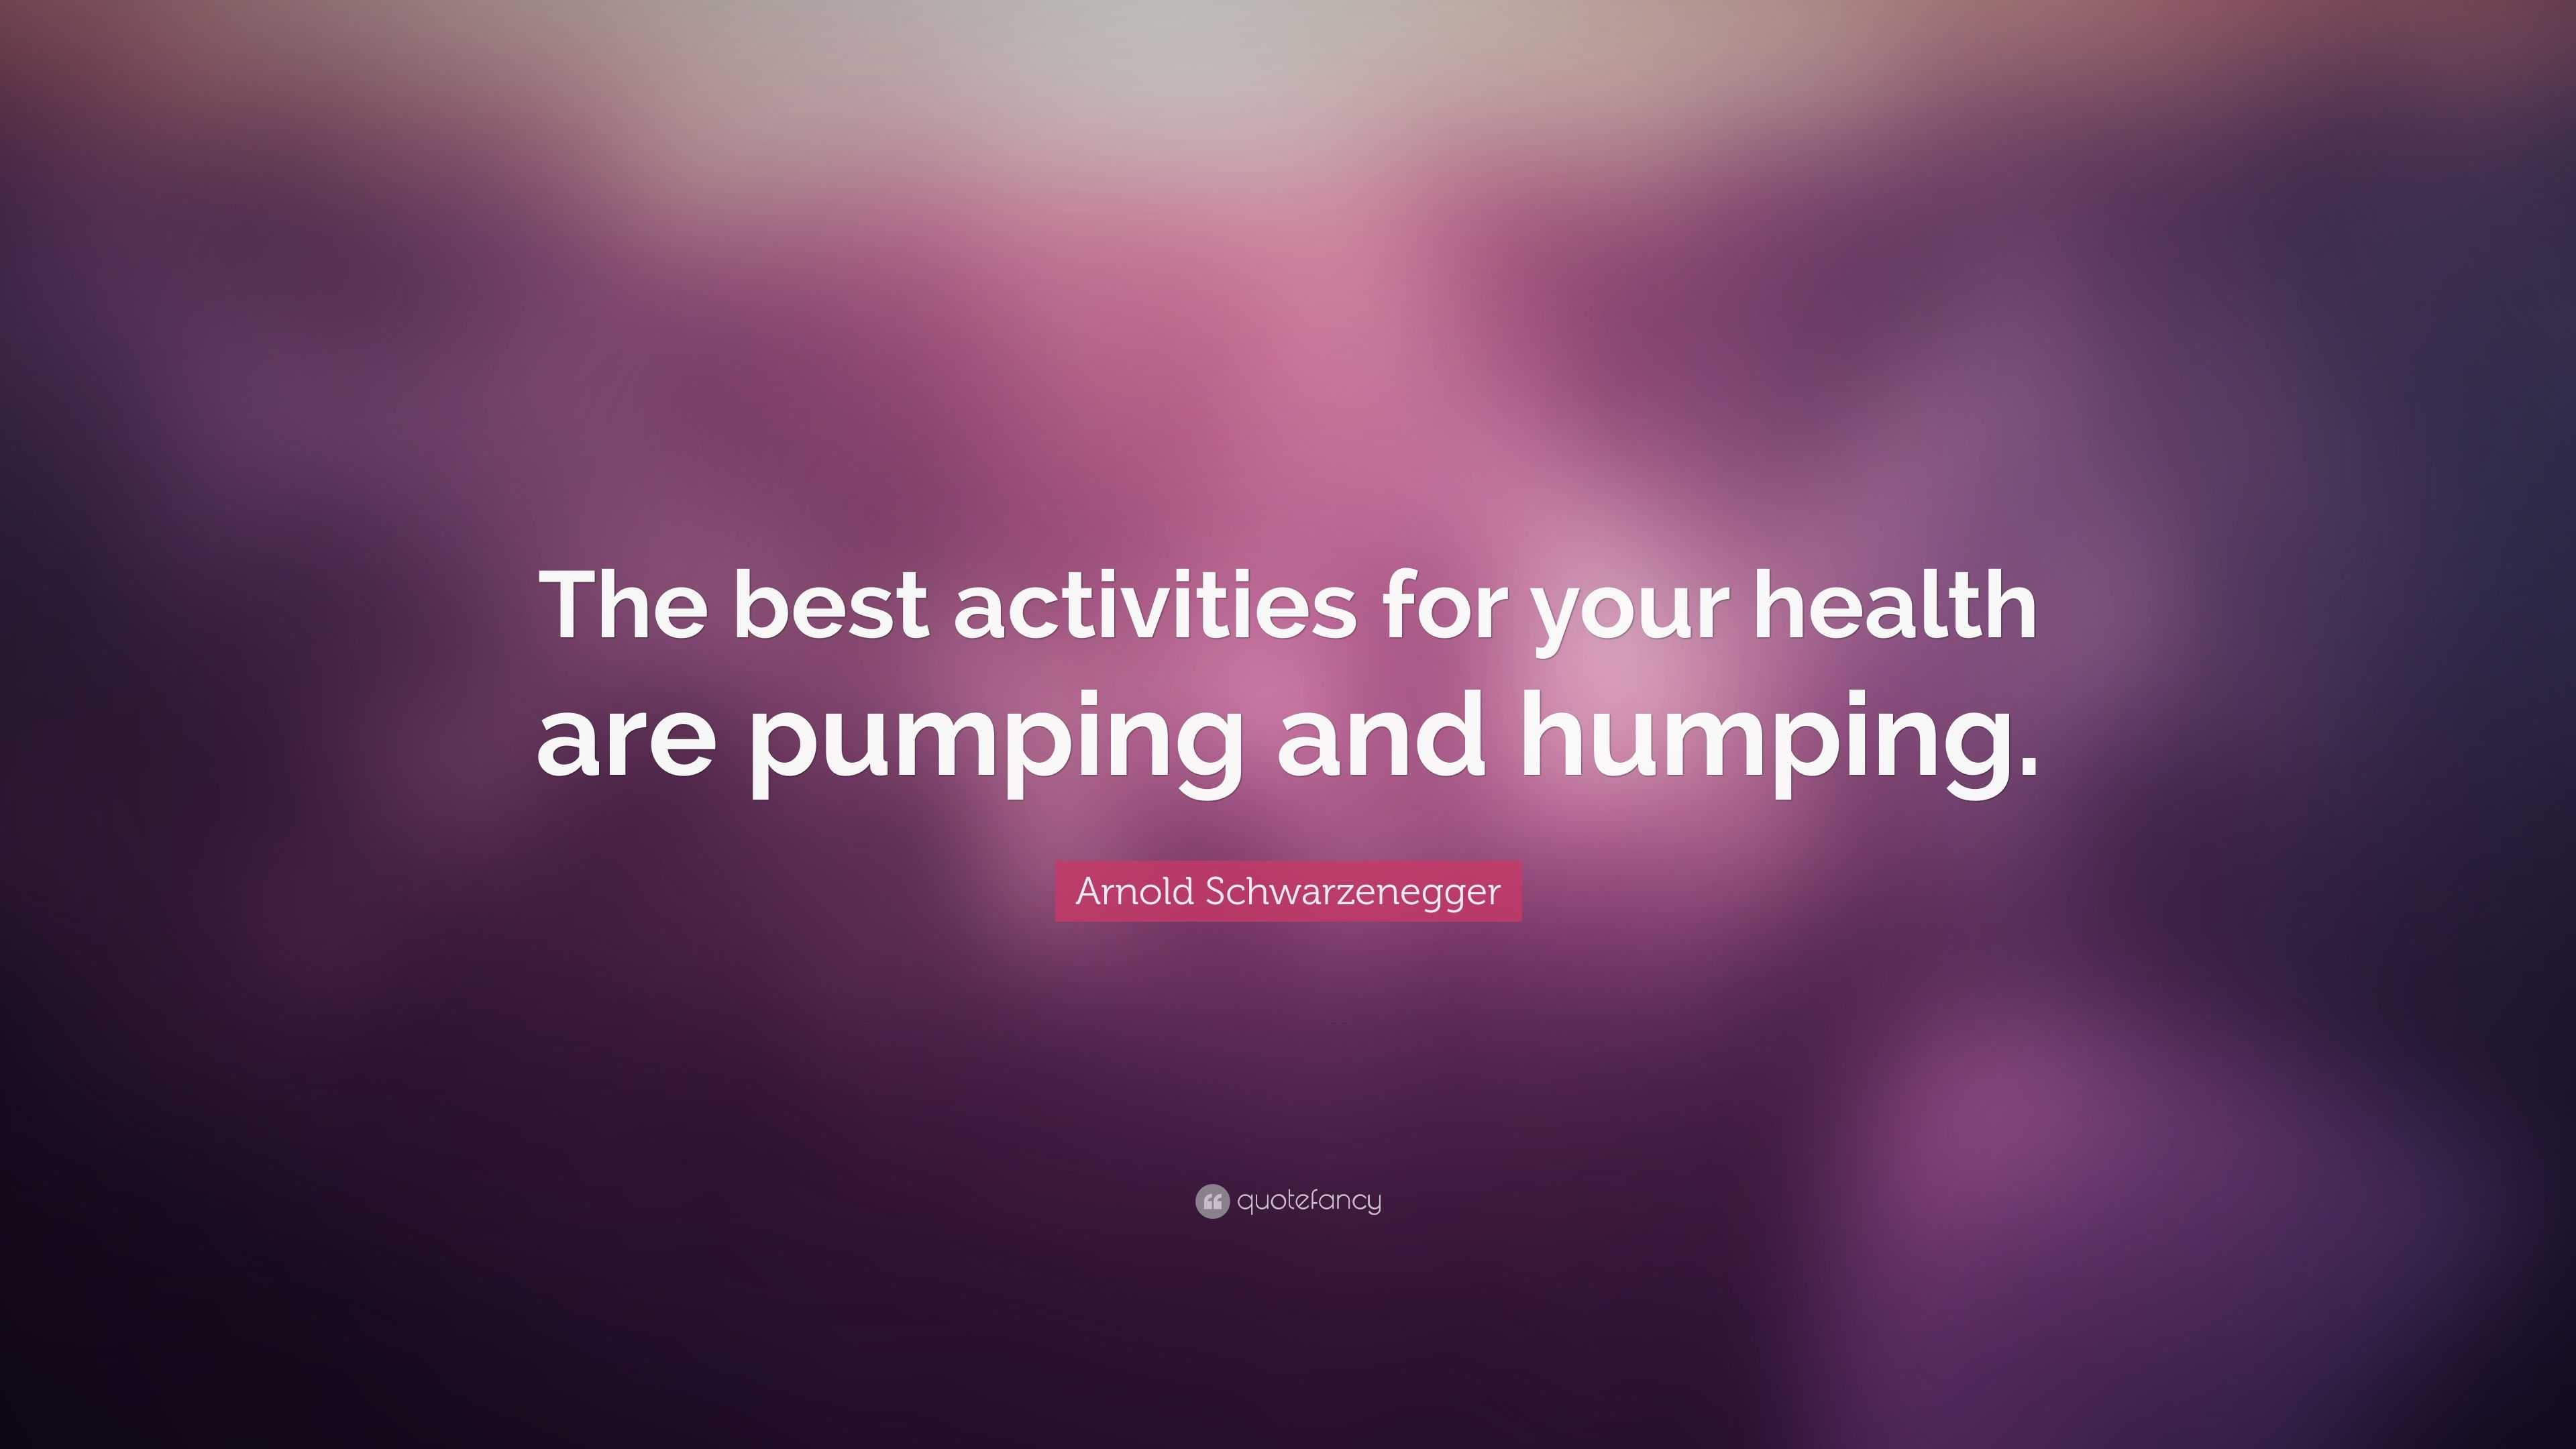 Arnold Schwarzenegger Quote: “The best activities for your health